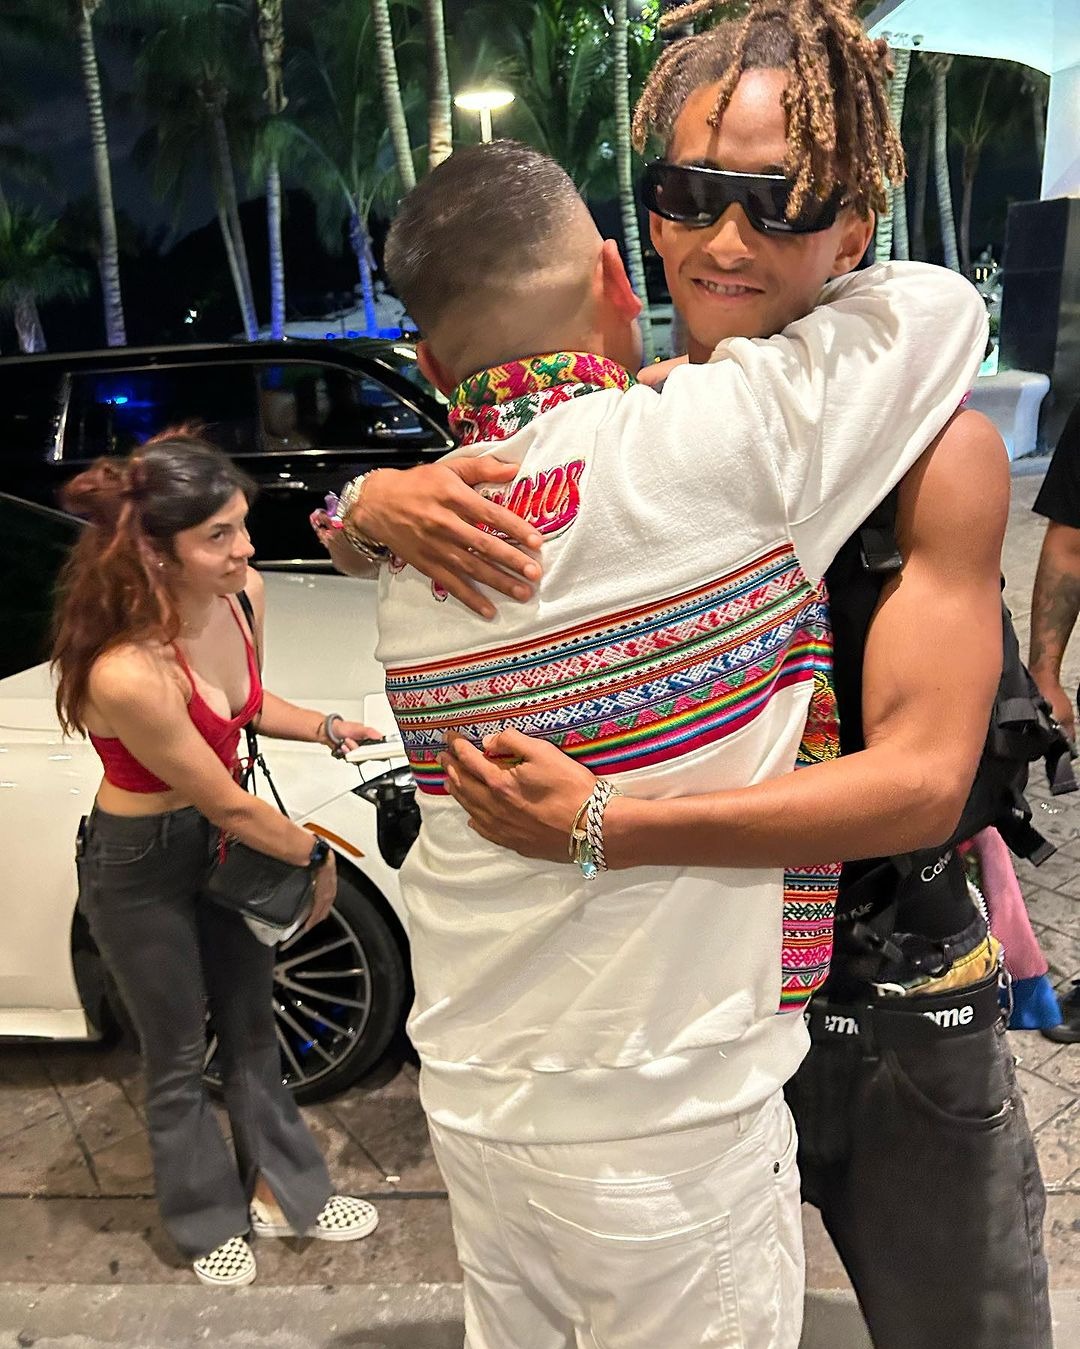 Tras recibir la prenda Jaden sella el momento con un abrazo a nuestro compatriota en muestra de humildad/ Foto: IG Brawans Zamalloa